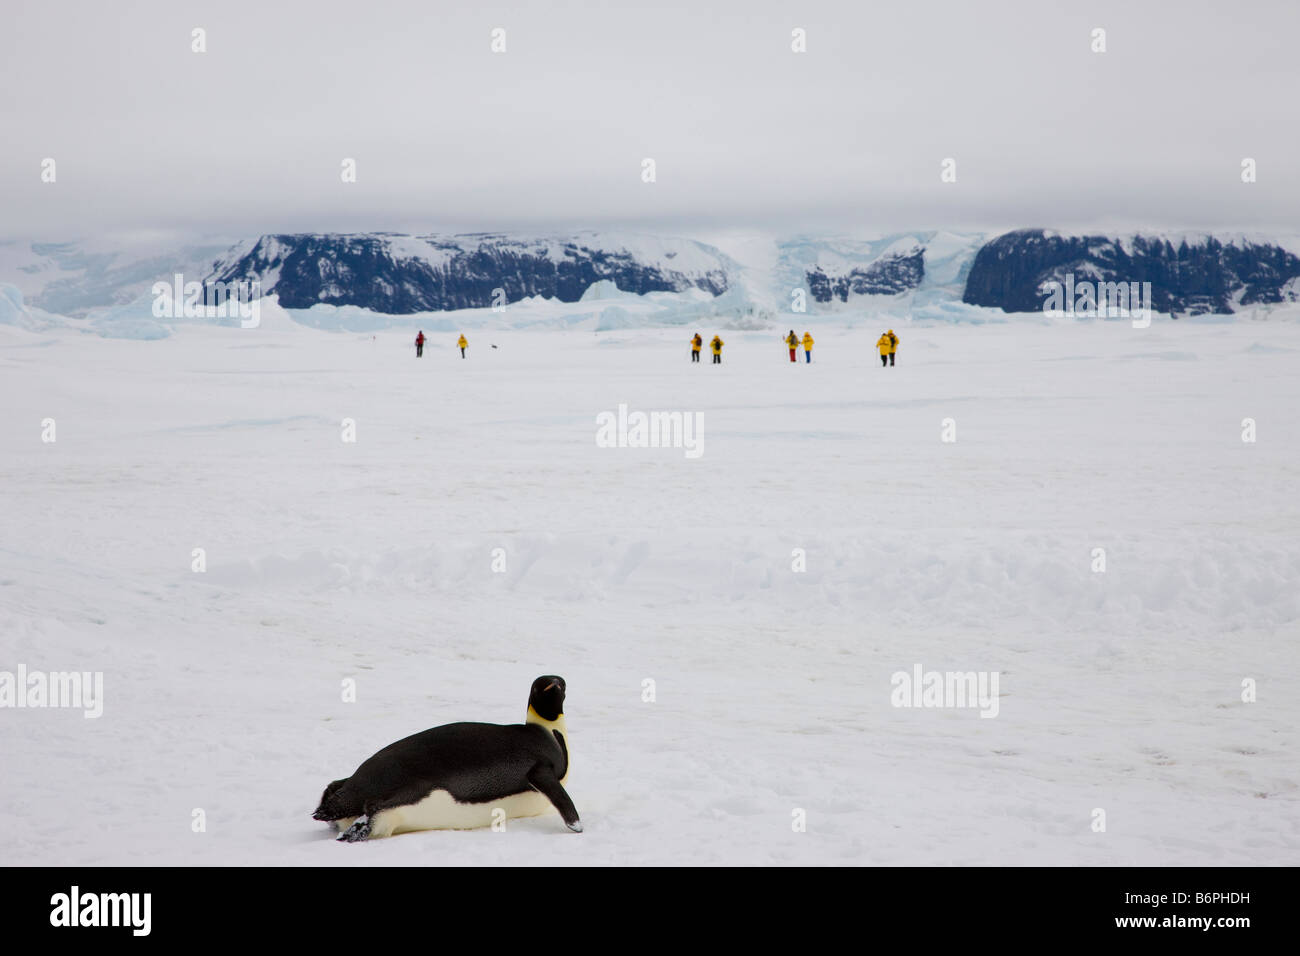 1 pinguino imperatore orologi distanti escursionisti ecoturistico esplorare veloce ghiacciaio ghiaccio snow landscape Mare di Weddell Antartide unica esperienza di vacanza Foto Stock